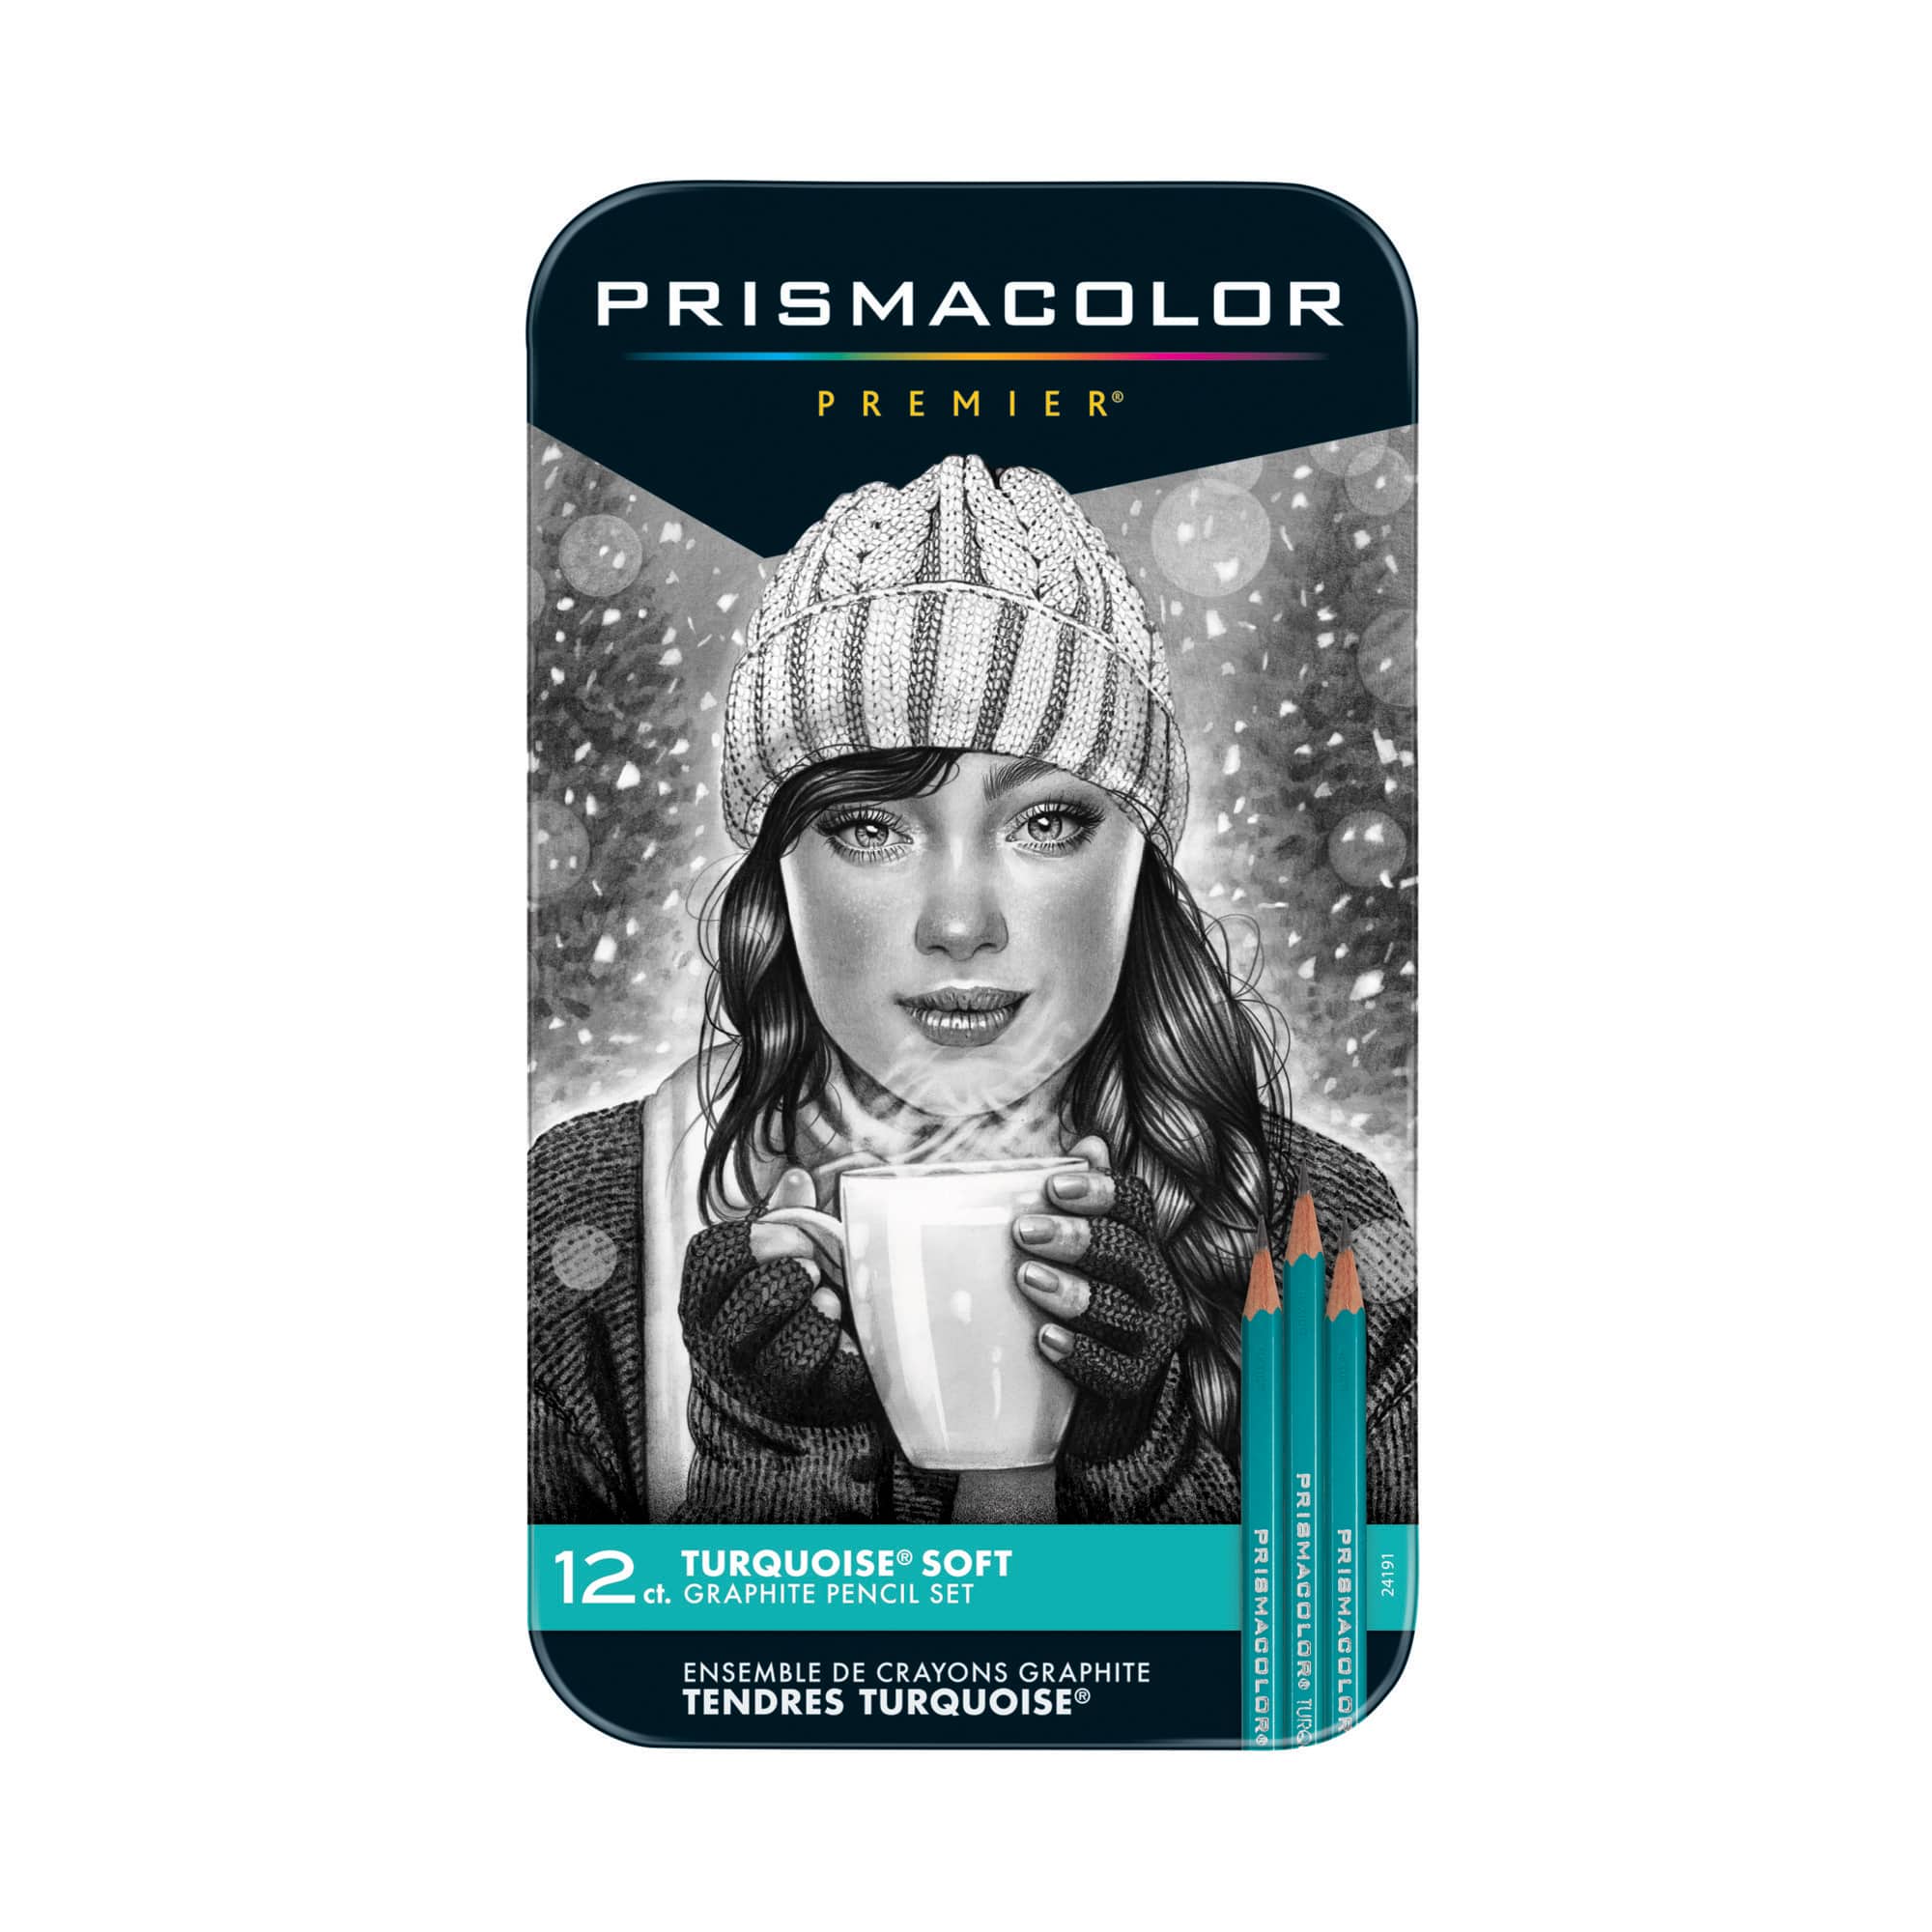 6 Packs: 12 ct. (72 total) Prismacolor&#xAE; Premier&#xAE; Turquoise Soft Graphite Pencil Set